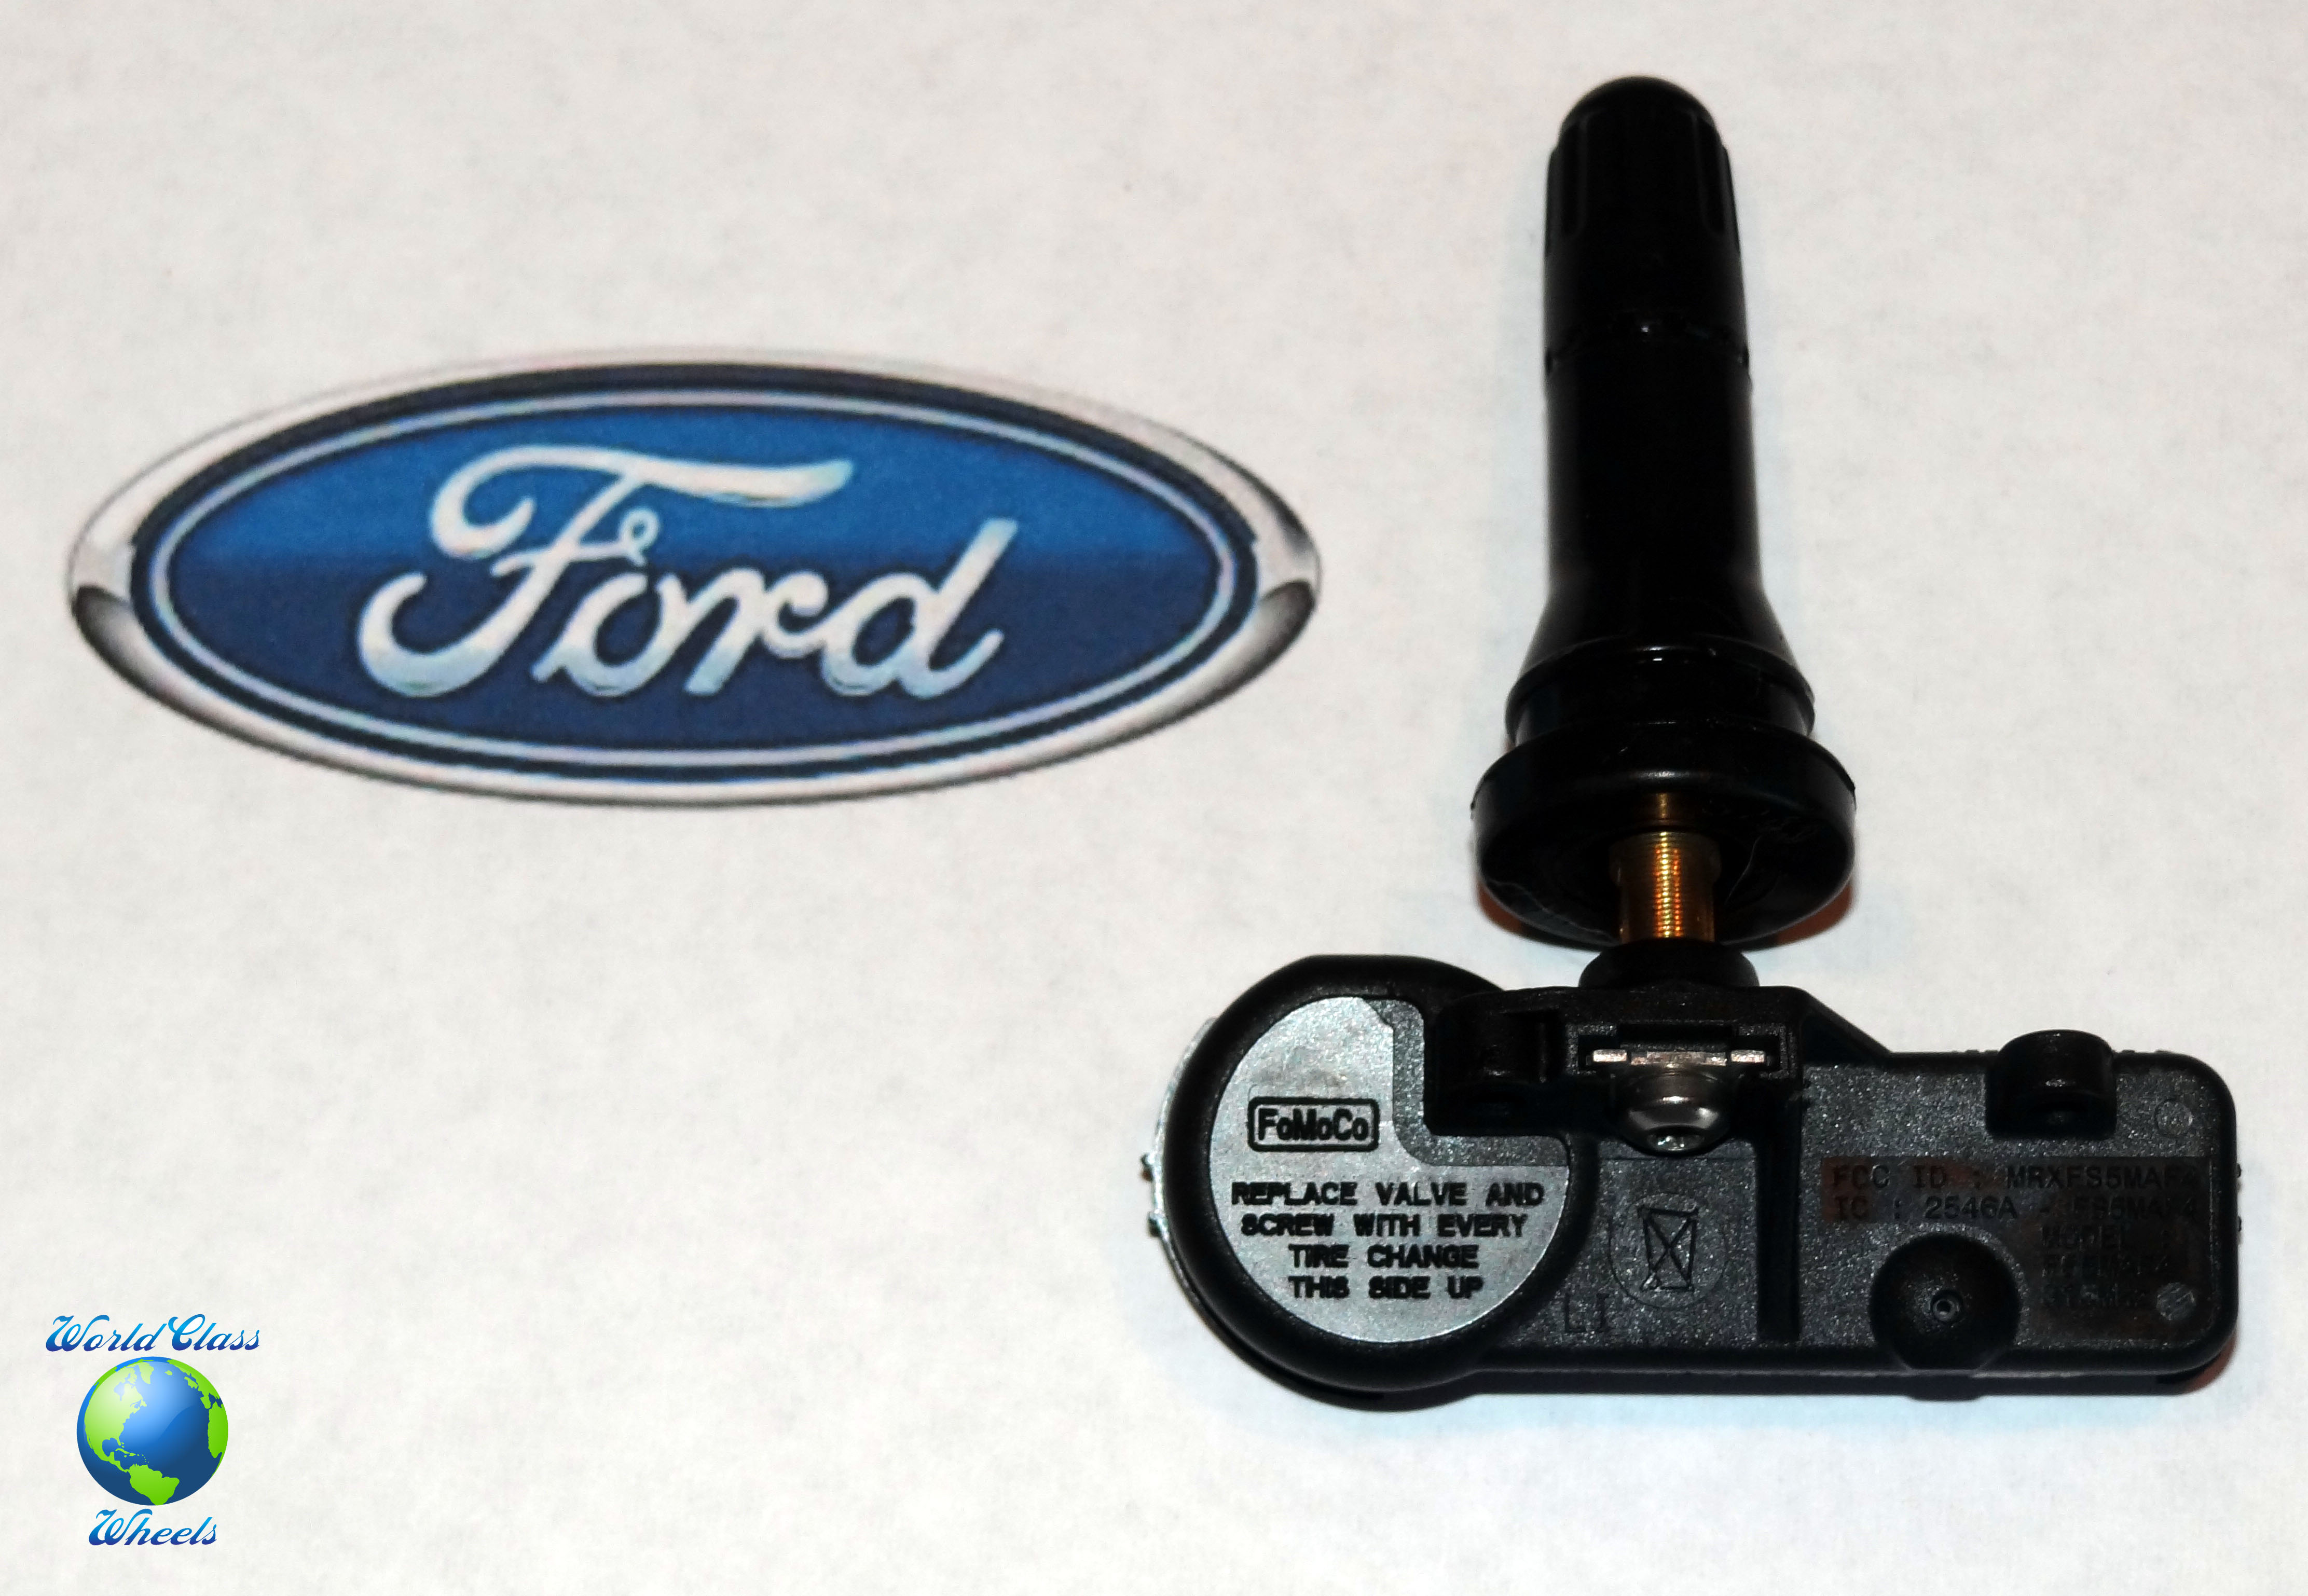 Ford Mondeo 5 — FFClub | Форум